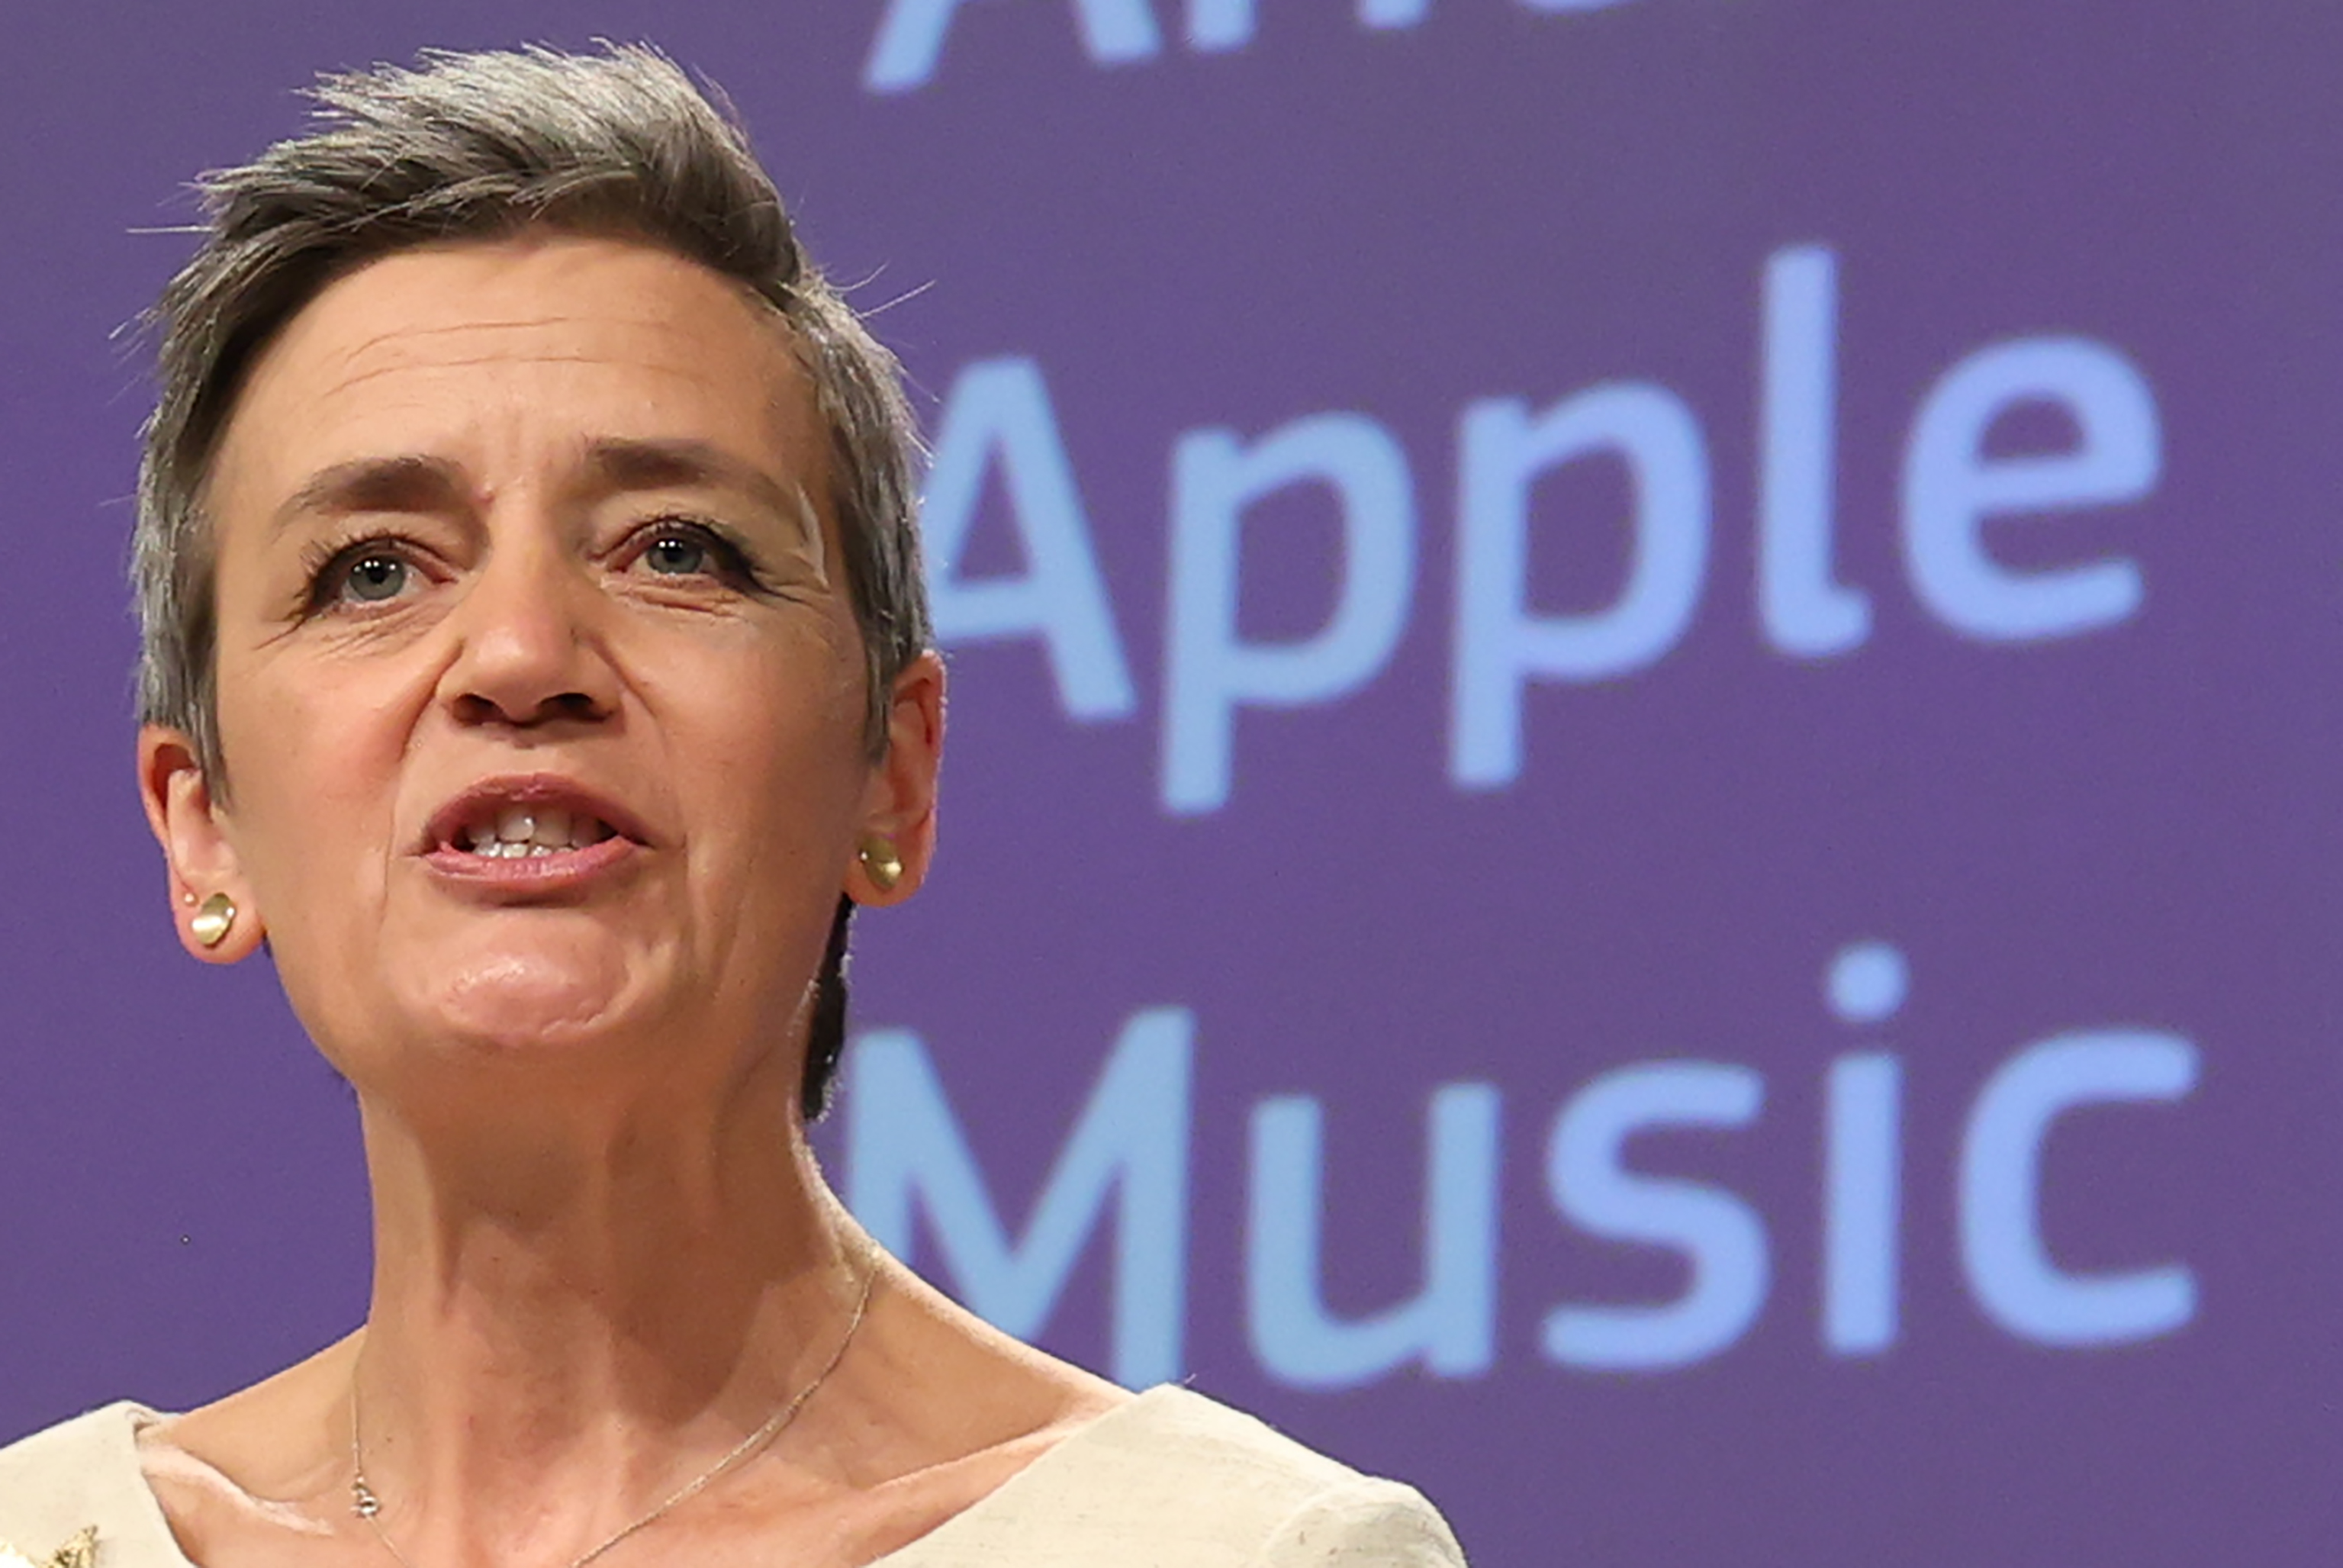 Musique en ligne: Bruxelles prend parti pour Spotify contre Apple